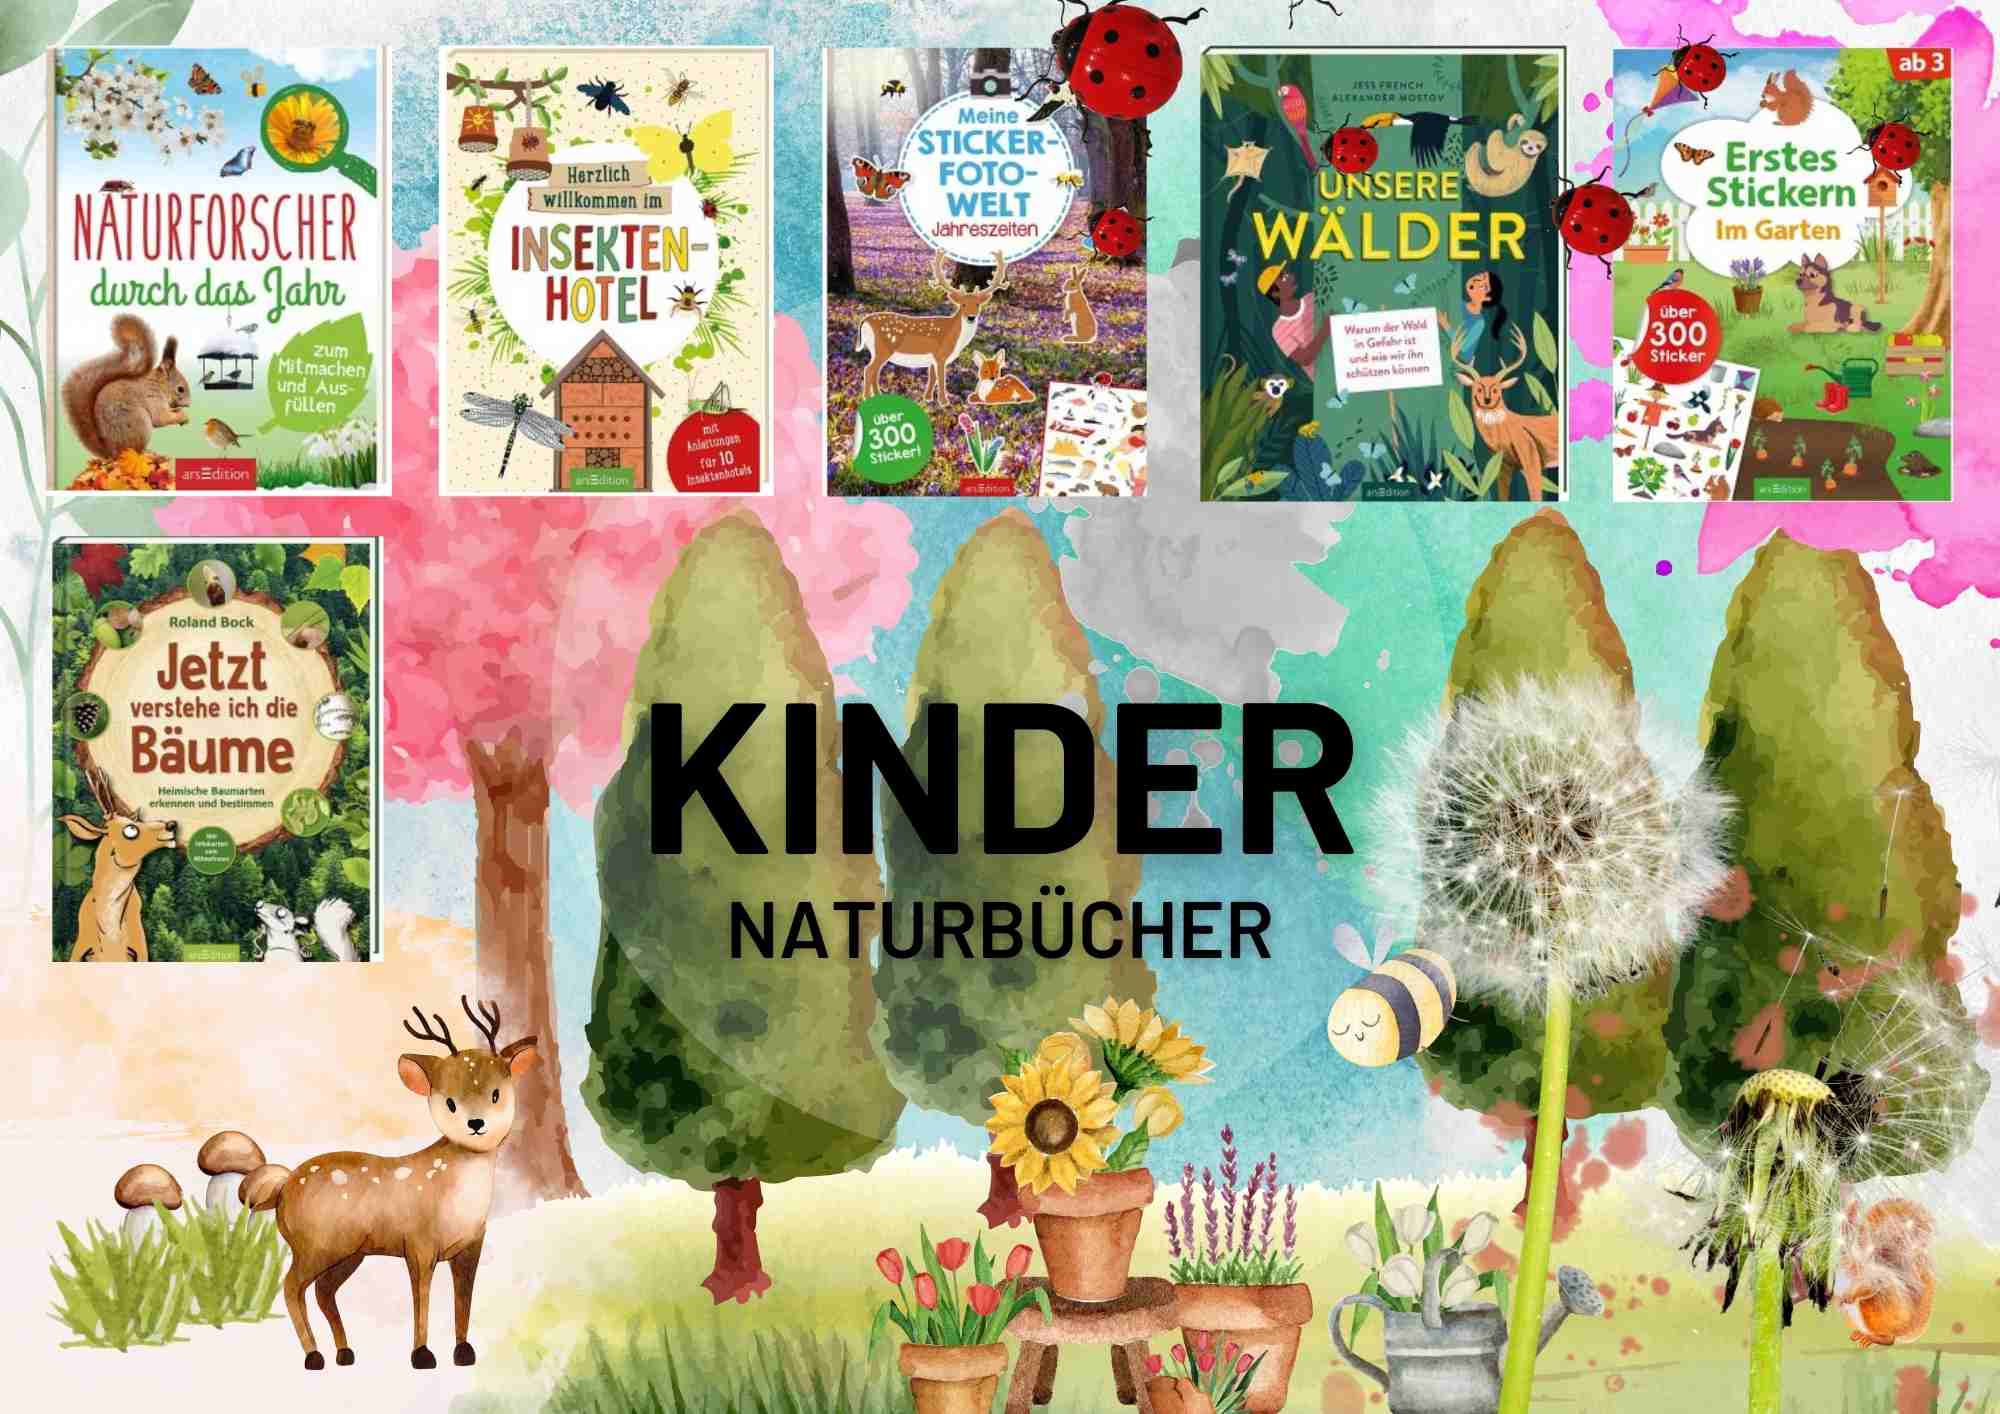 Welche Naturbücher gibt es für Kinder? Wir stellen 6 Natur Kinderbücher vor.